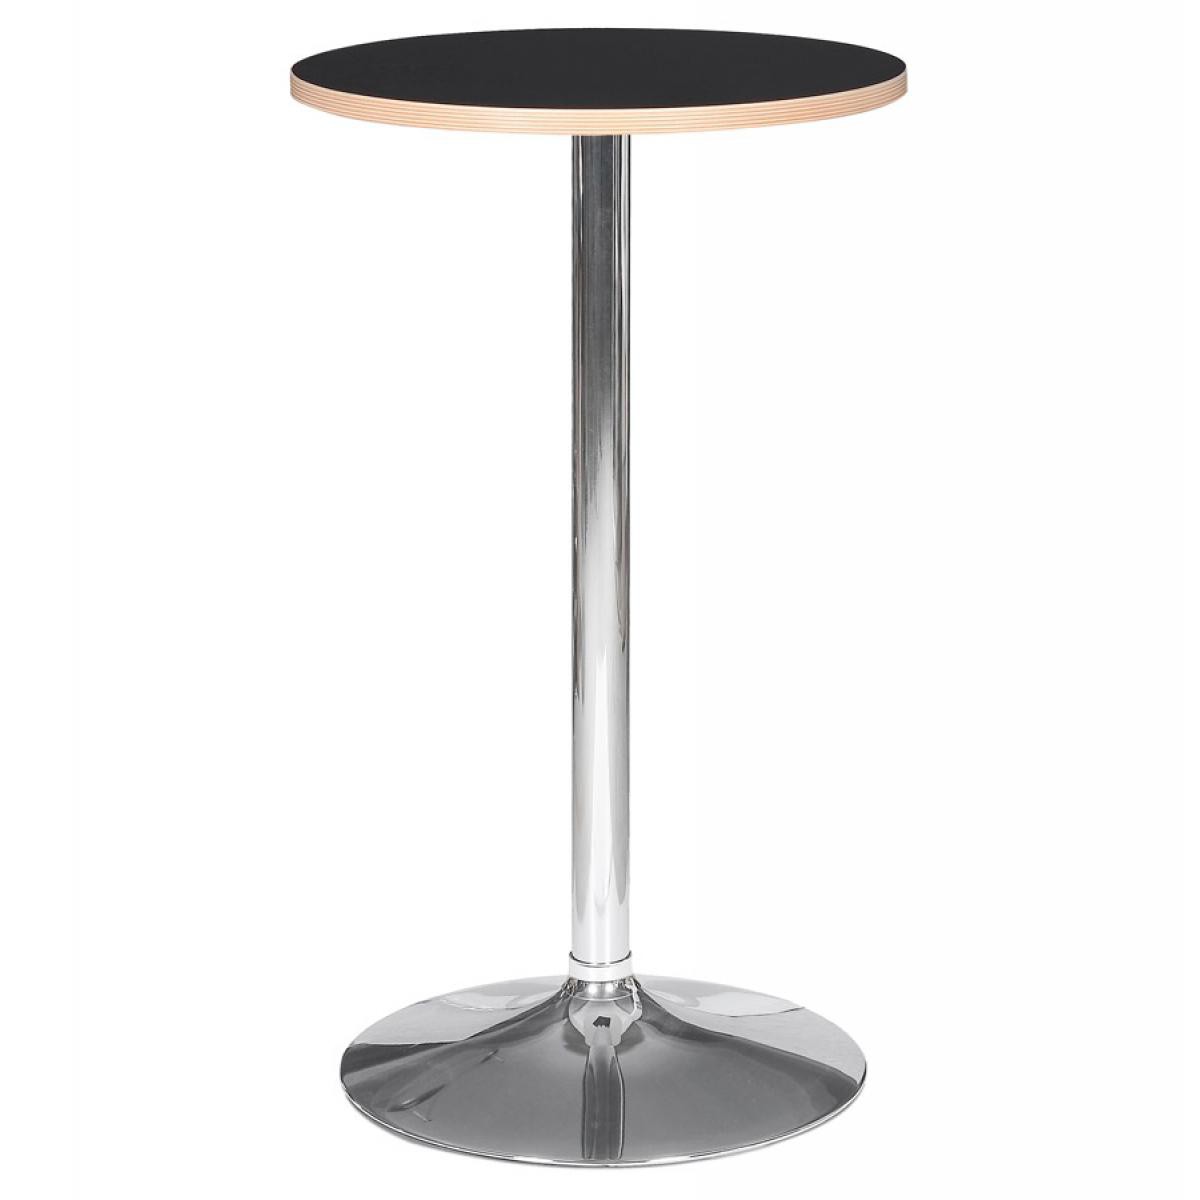 Alterego - Table haute ronde 'ELIOT ROUND' noire avec un pied en métal chromé - Ø 60 cm - Tables à manger